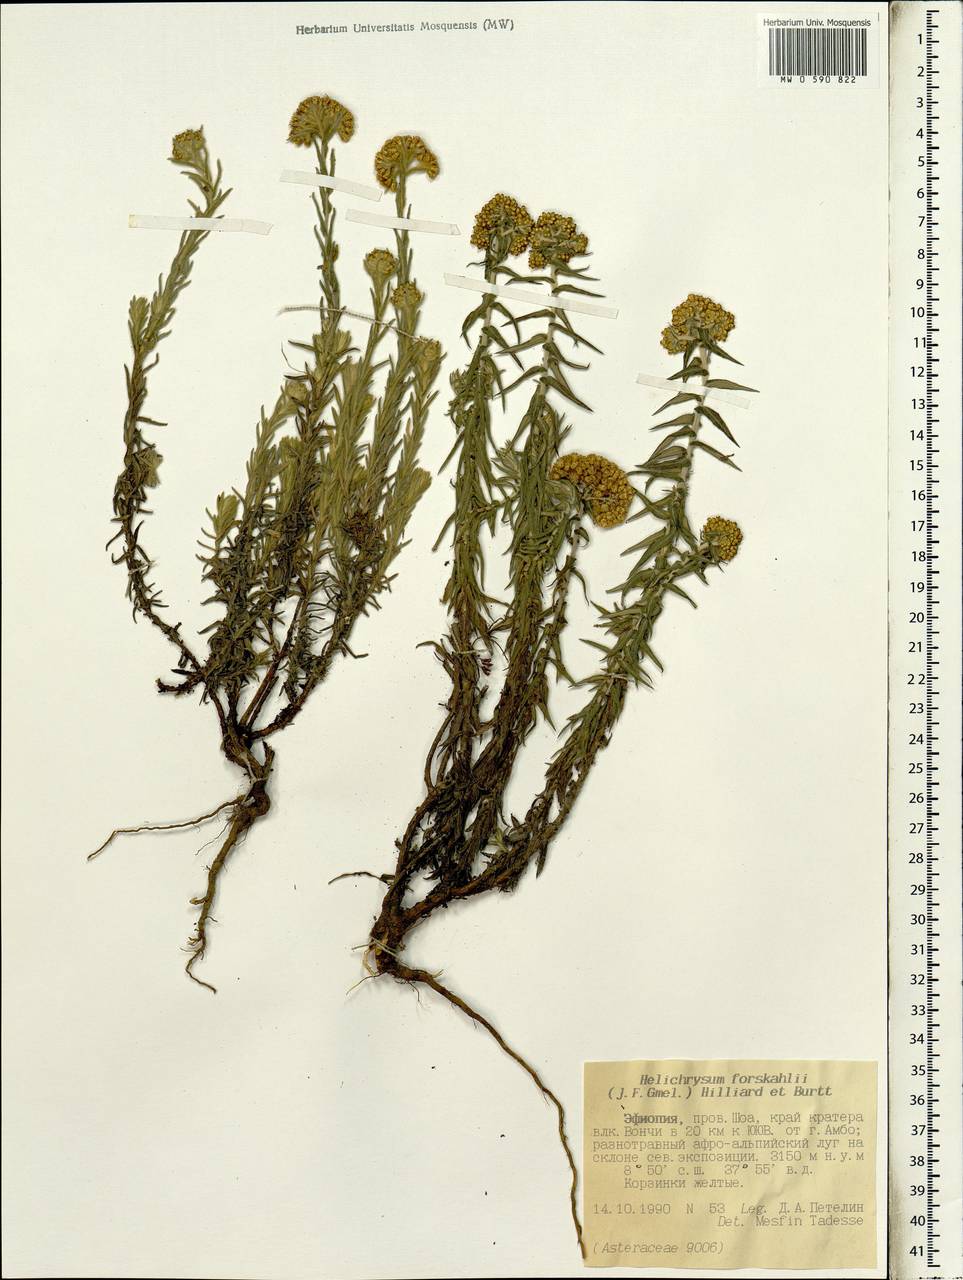 Helichrysum forskahlii (J. F. Gmel.) Hilliard & Burtt, Африка (AFR) (Эфиопия)